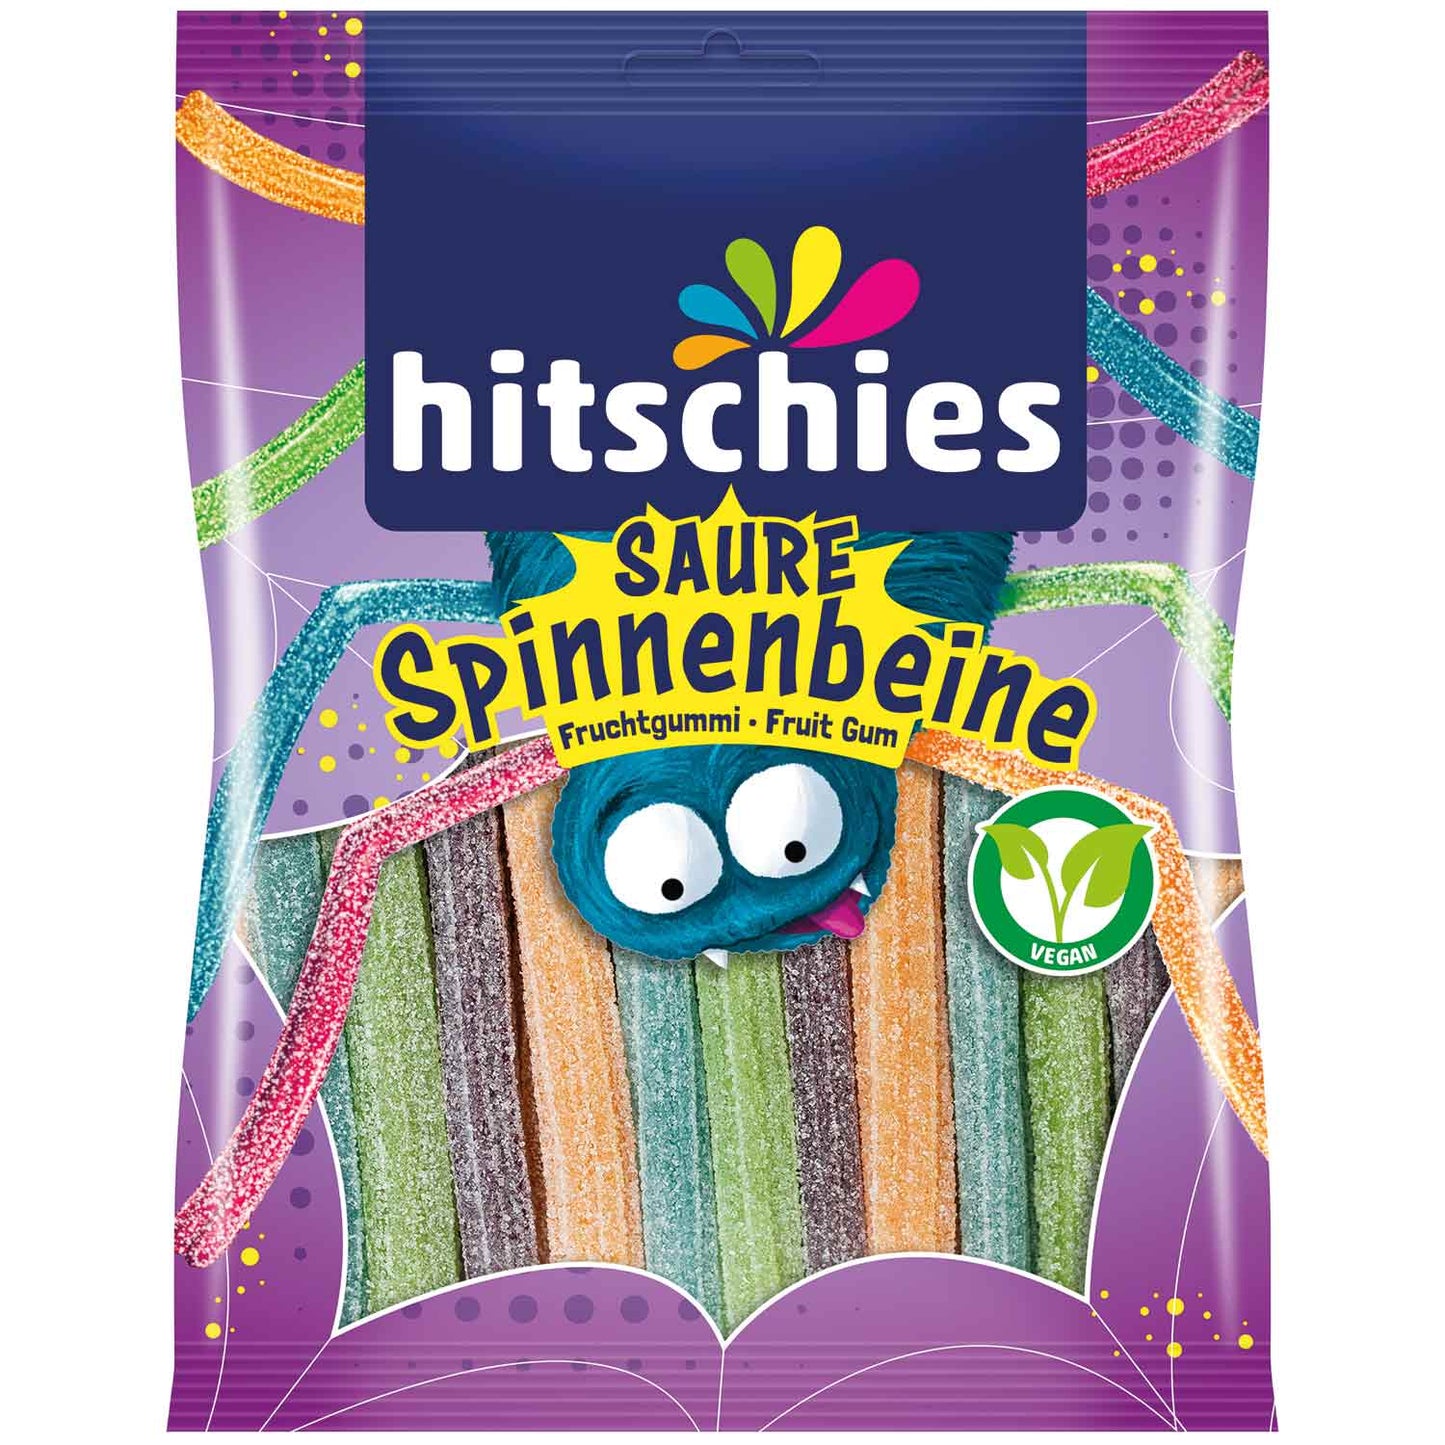 hitschies Saure Spinnenbeine 125g - Candyshop.ch